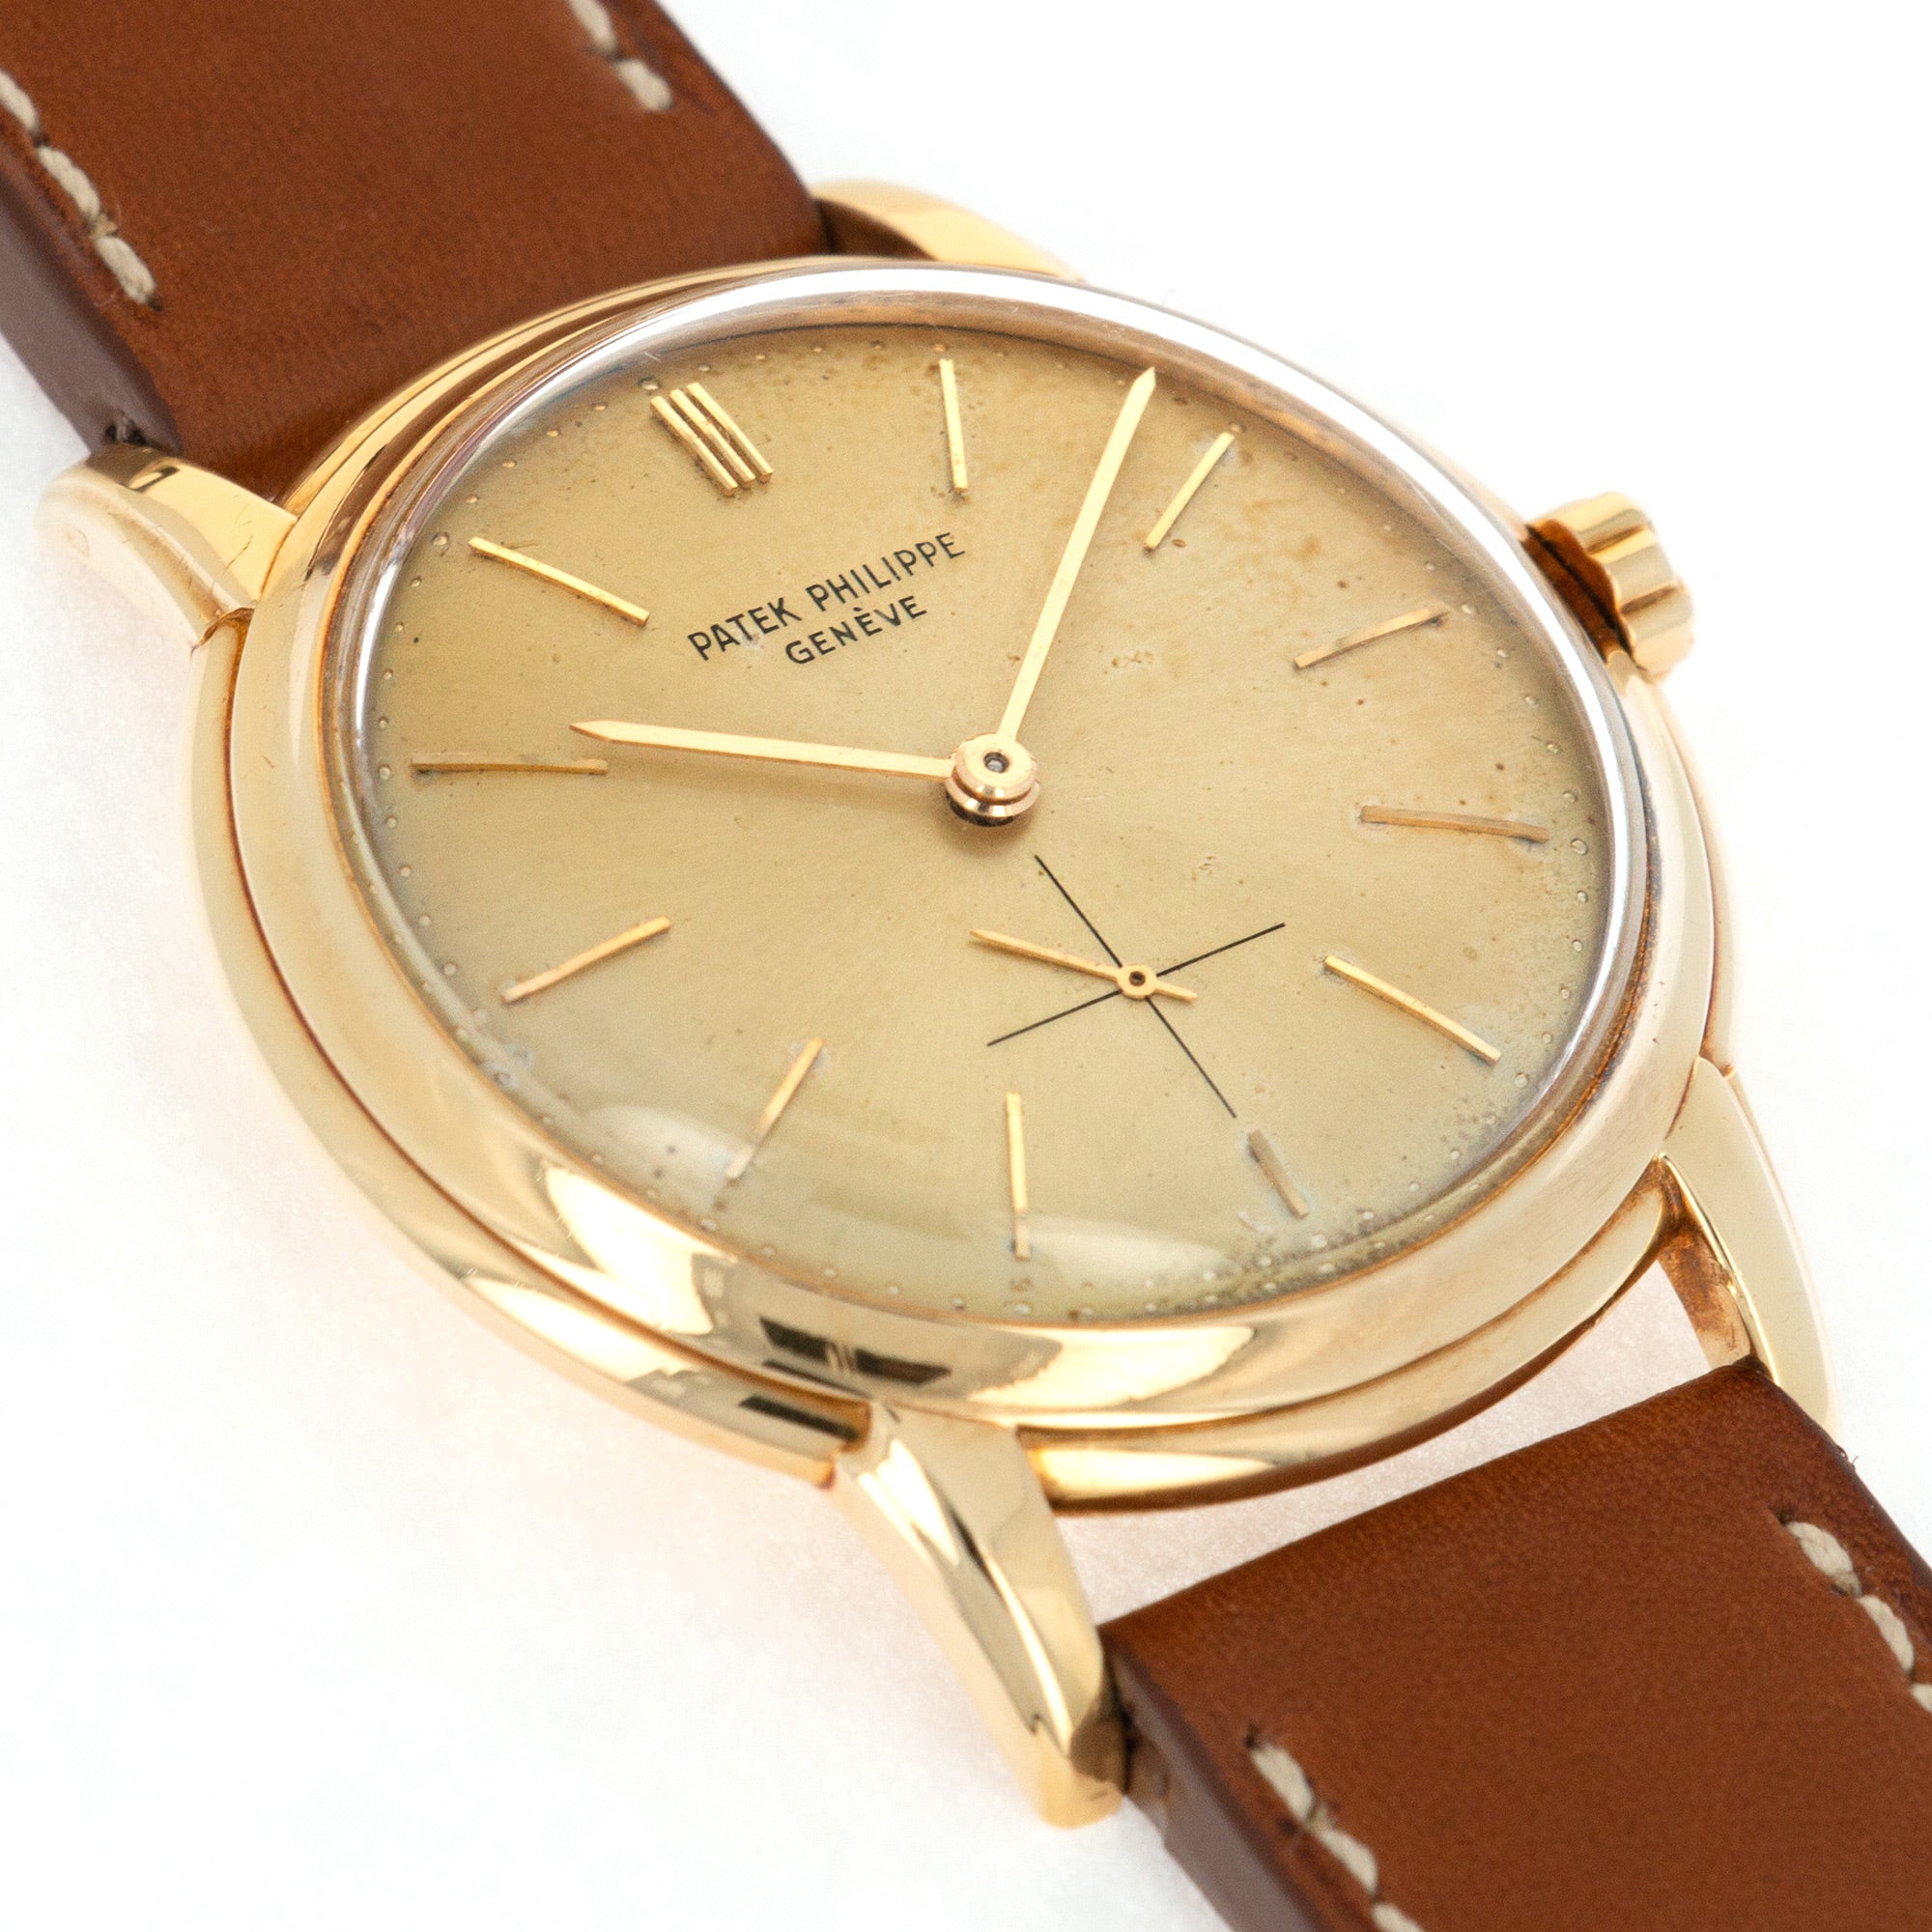 Patek Philippe - Patek Philippe Yellow Gold Calatrava Watch Ref. 2551 - The Keystone Watches